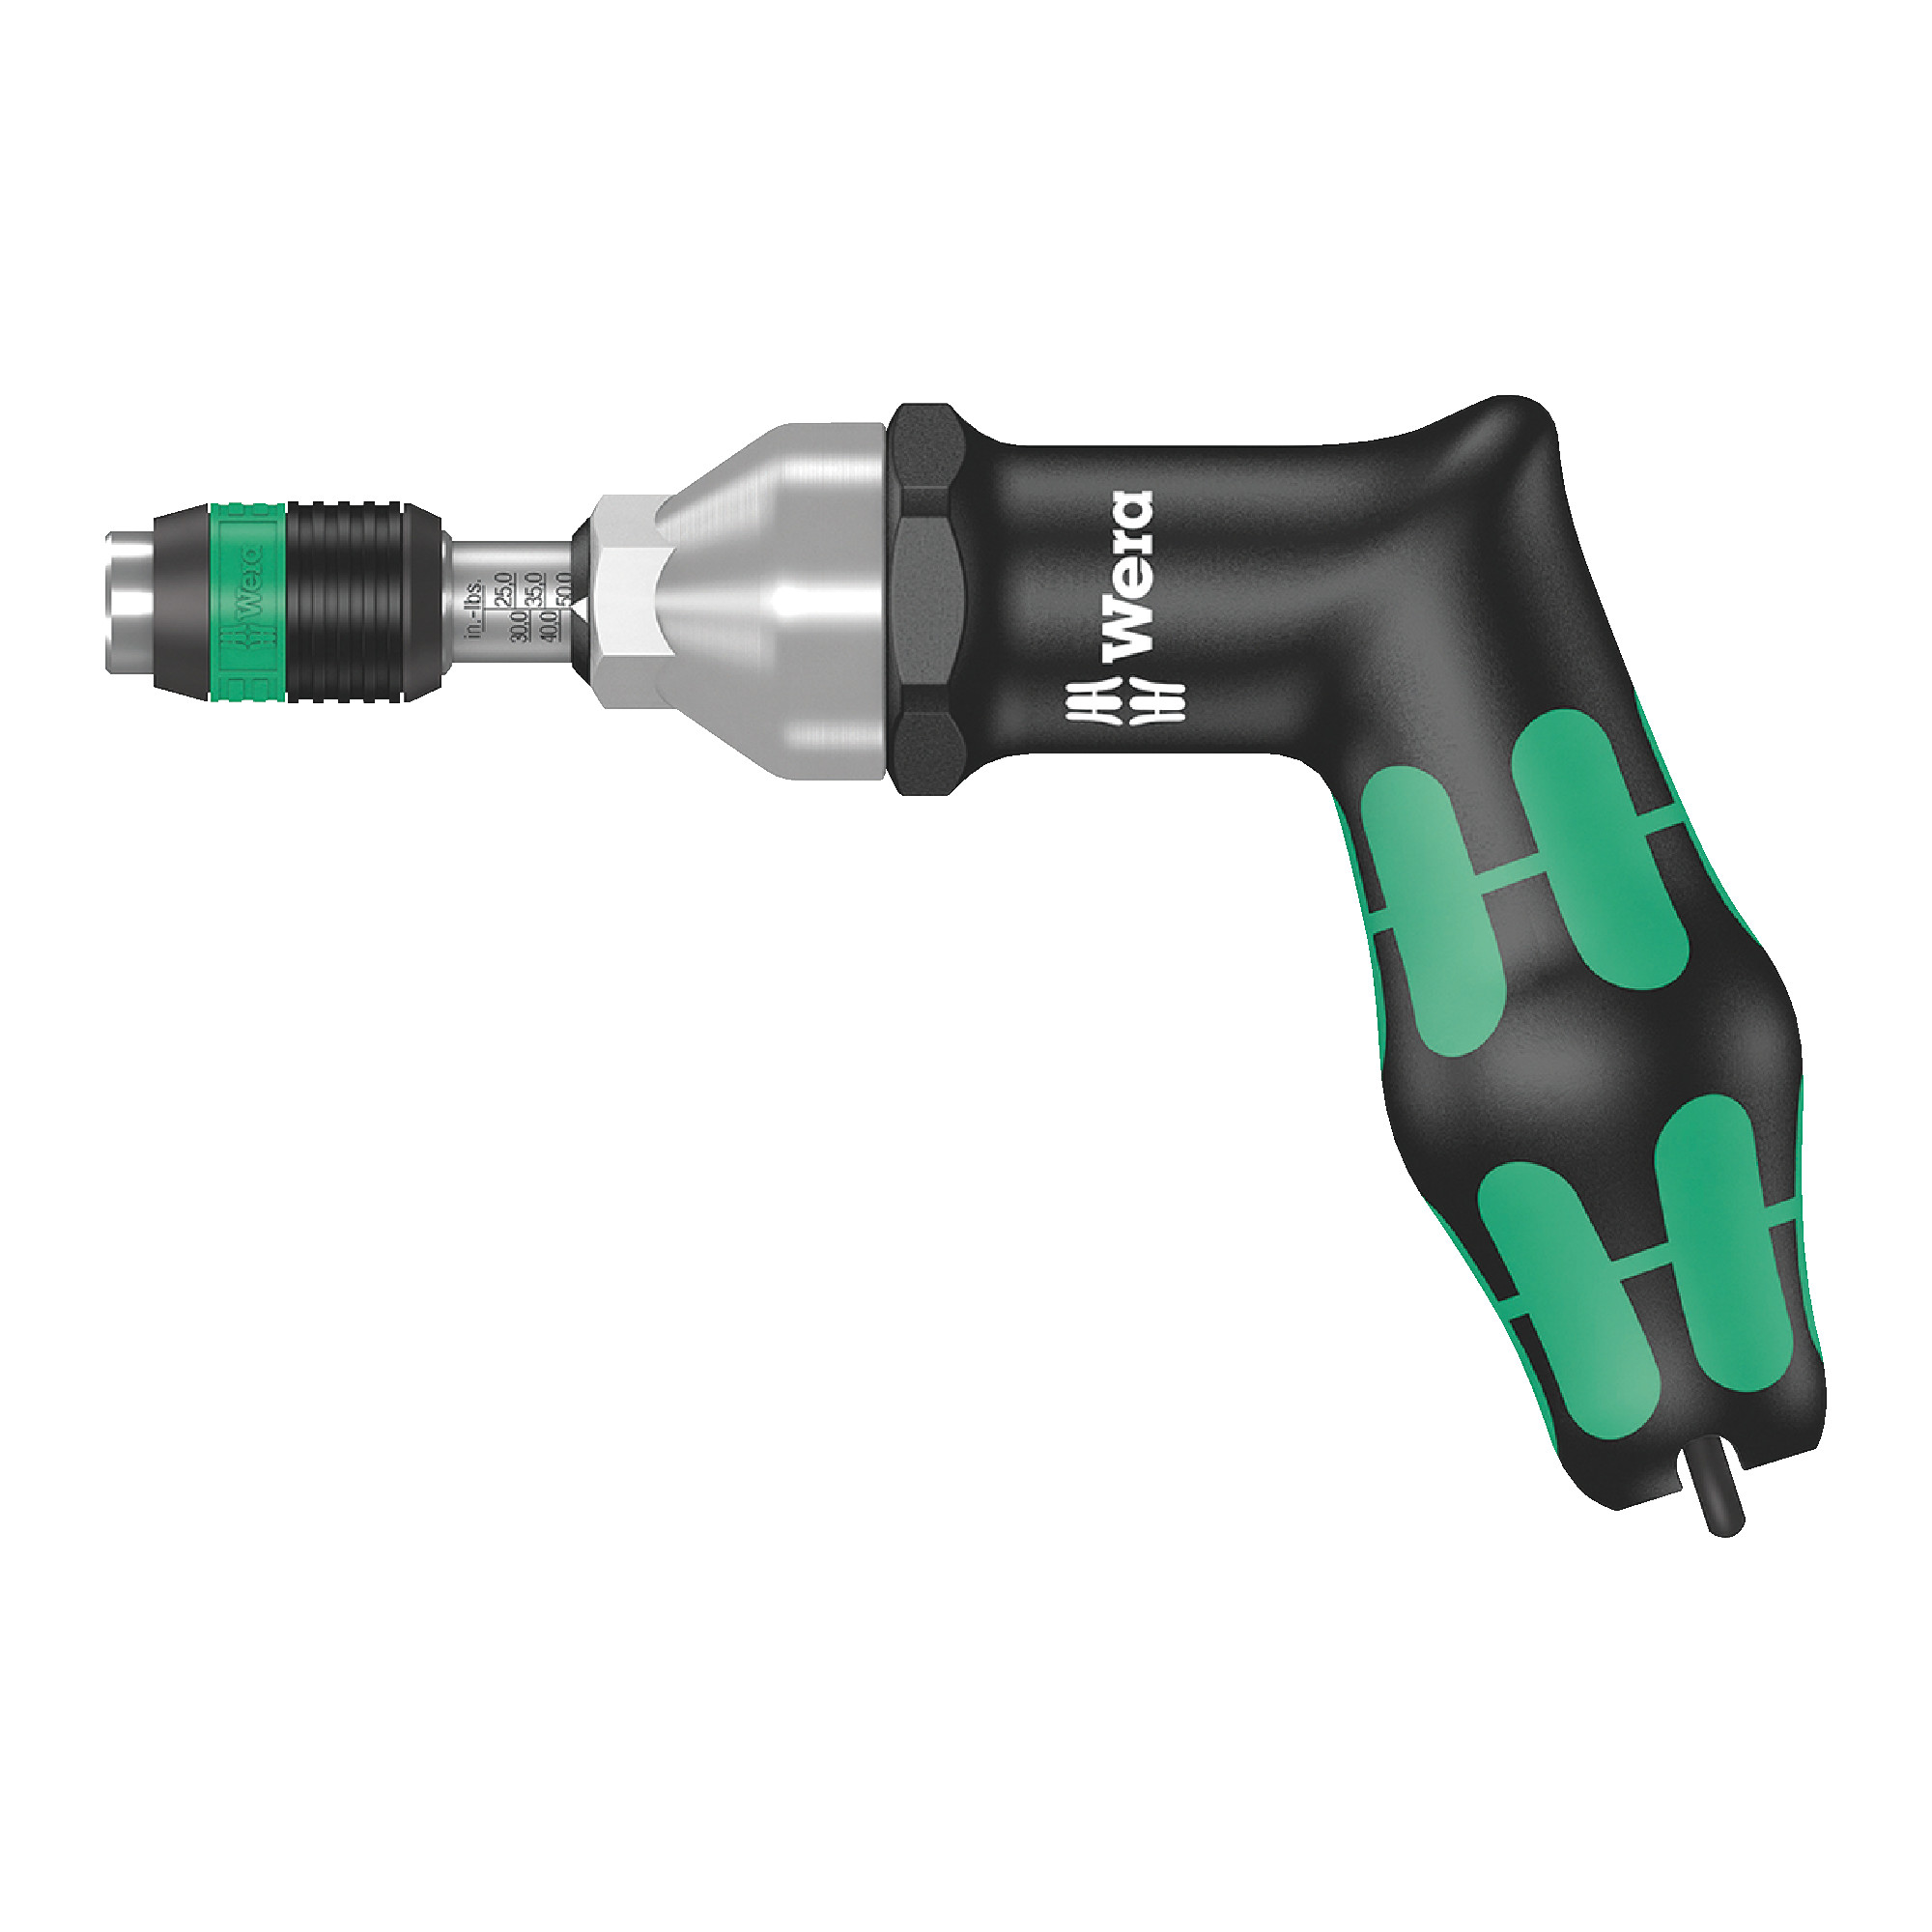 Pistol Grip Adjustable Torque Screwdrivers With Rapidaptor Quick-Release Chuck